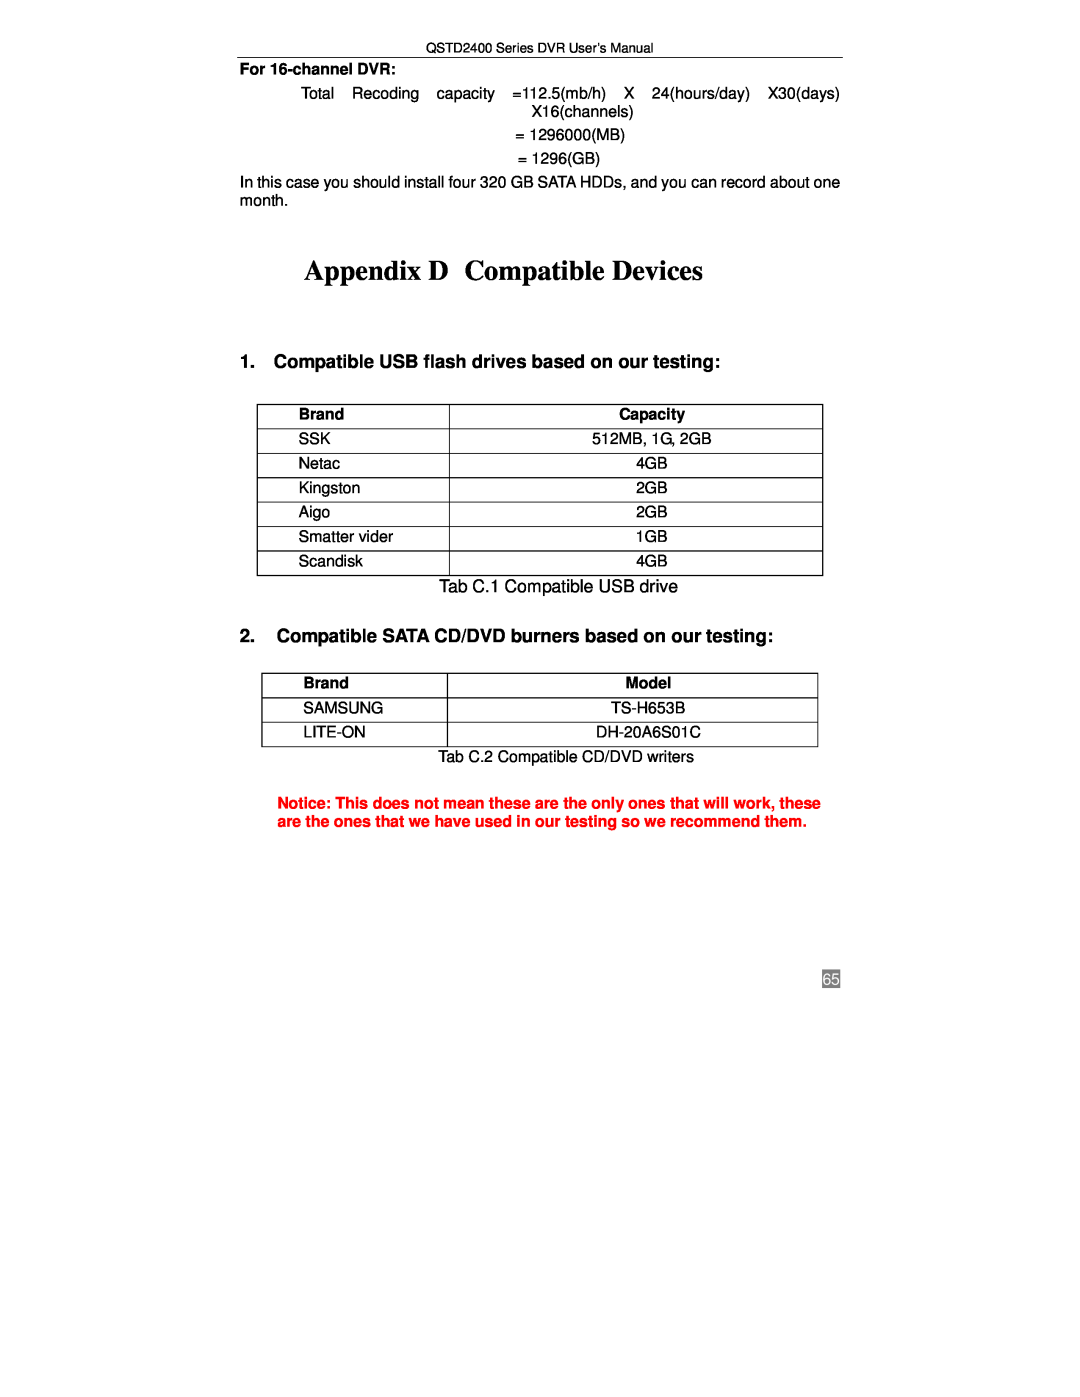 Q-See QSTD2416, QSTD2408, QSTD2404 user manual Appendix D Compatible Devices, Tab C.1 Compatible USB drive 